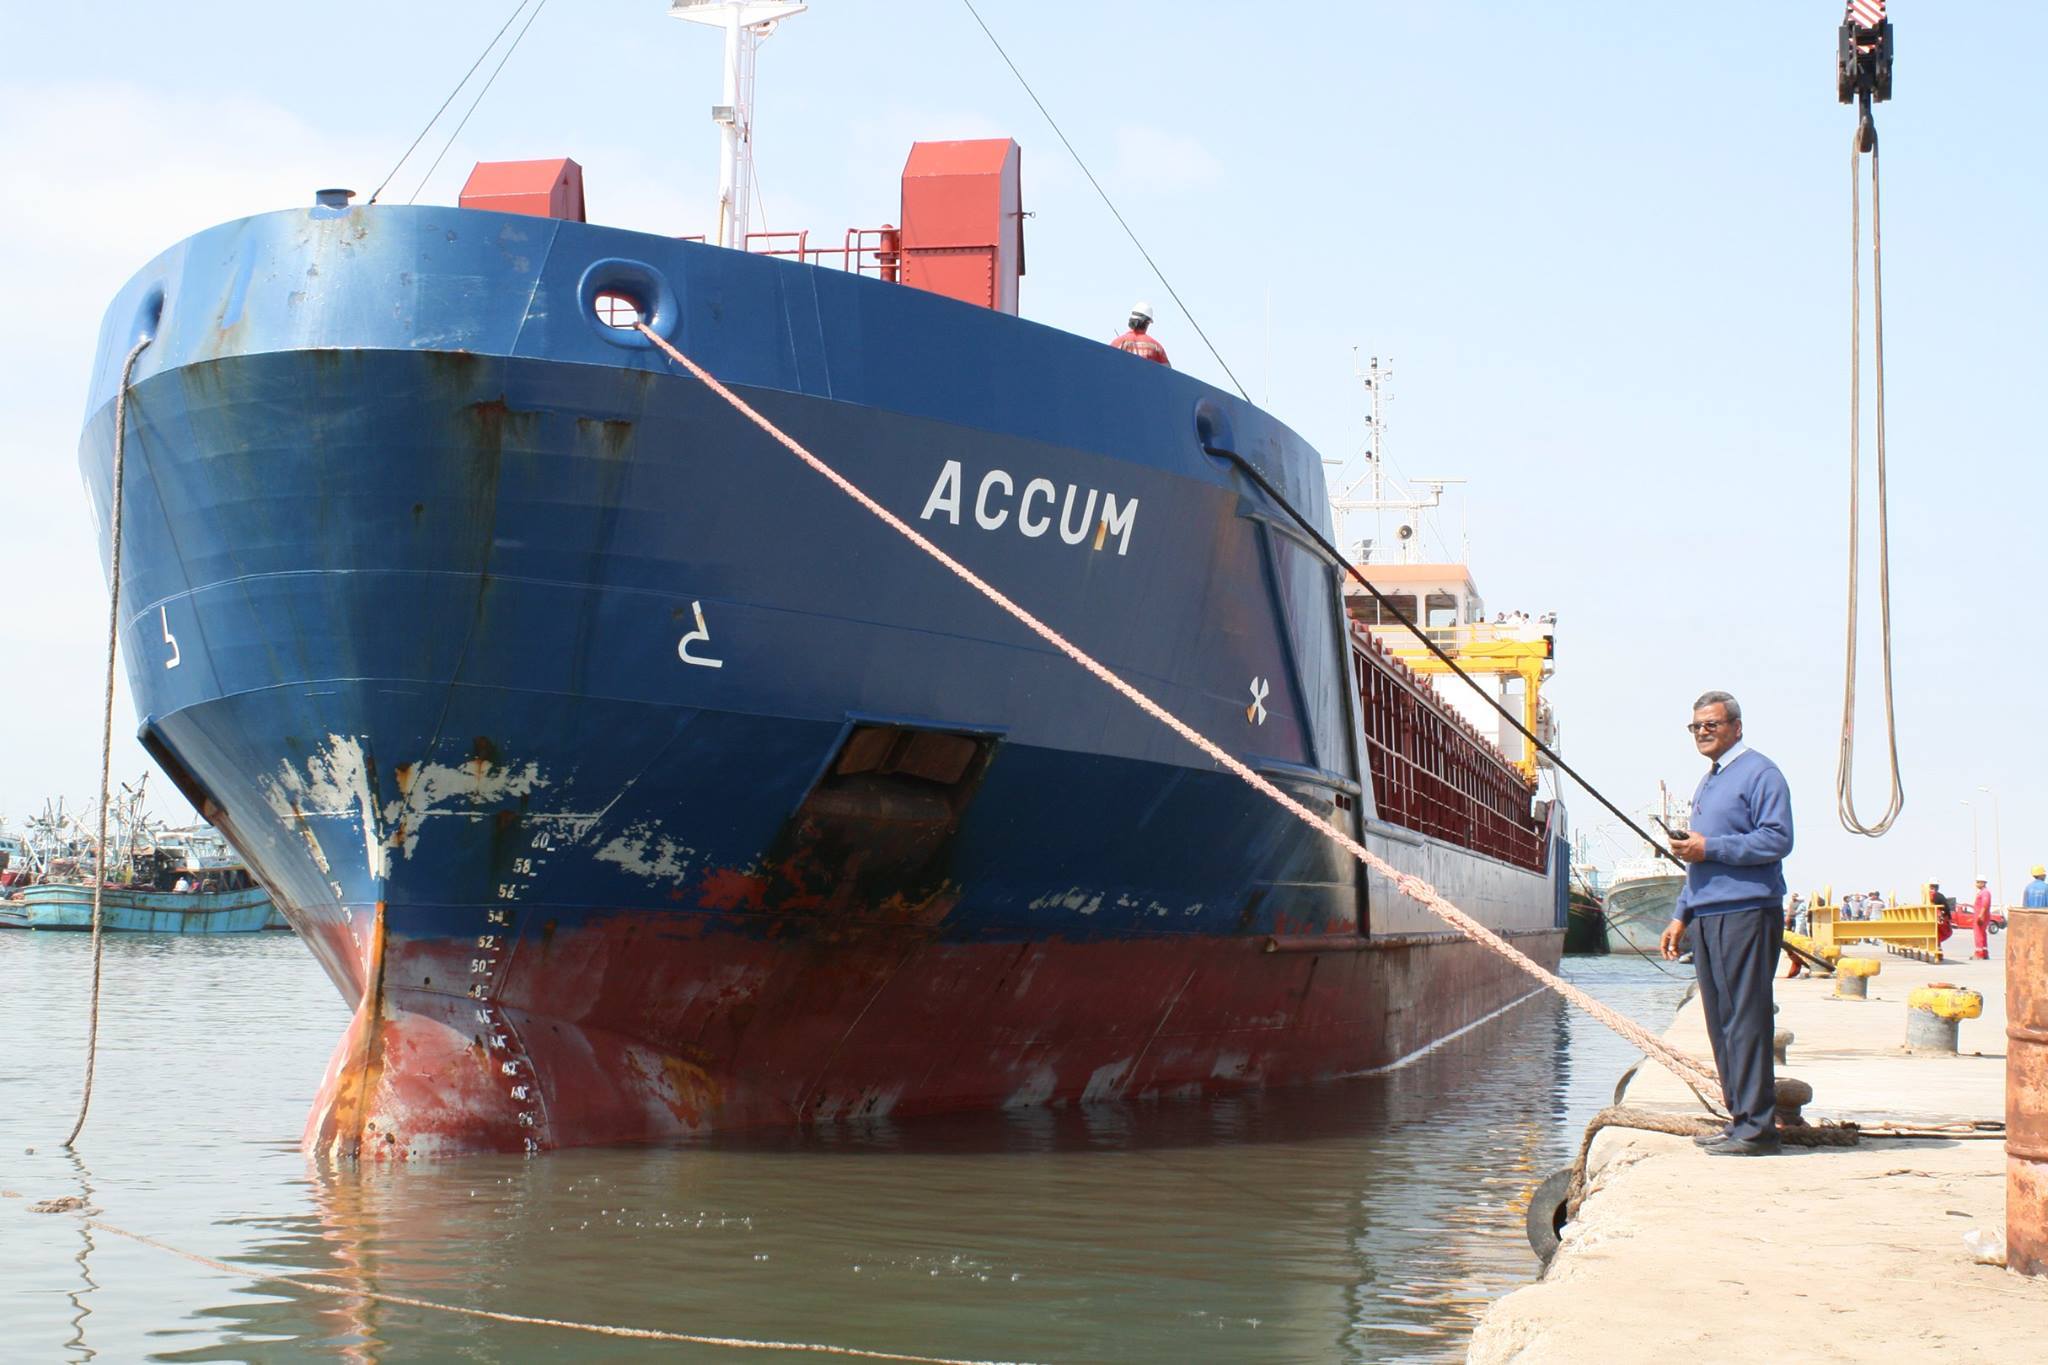 3- وصول السفينة أكوم لميناء البرلس